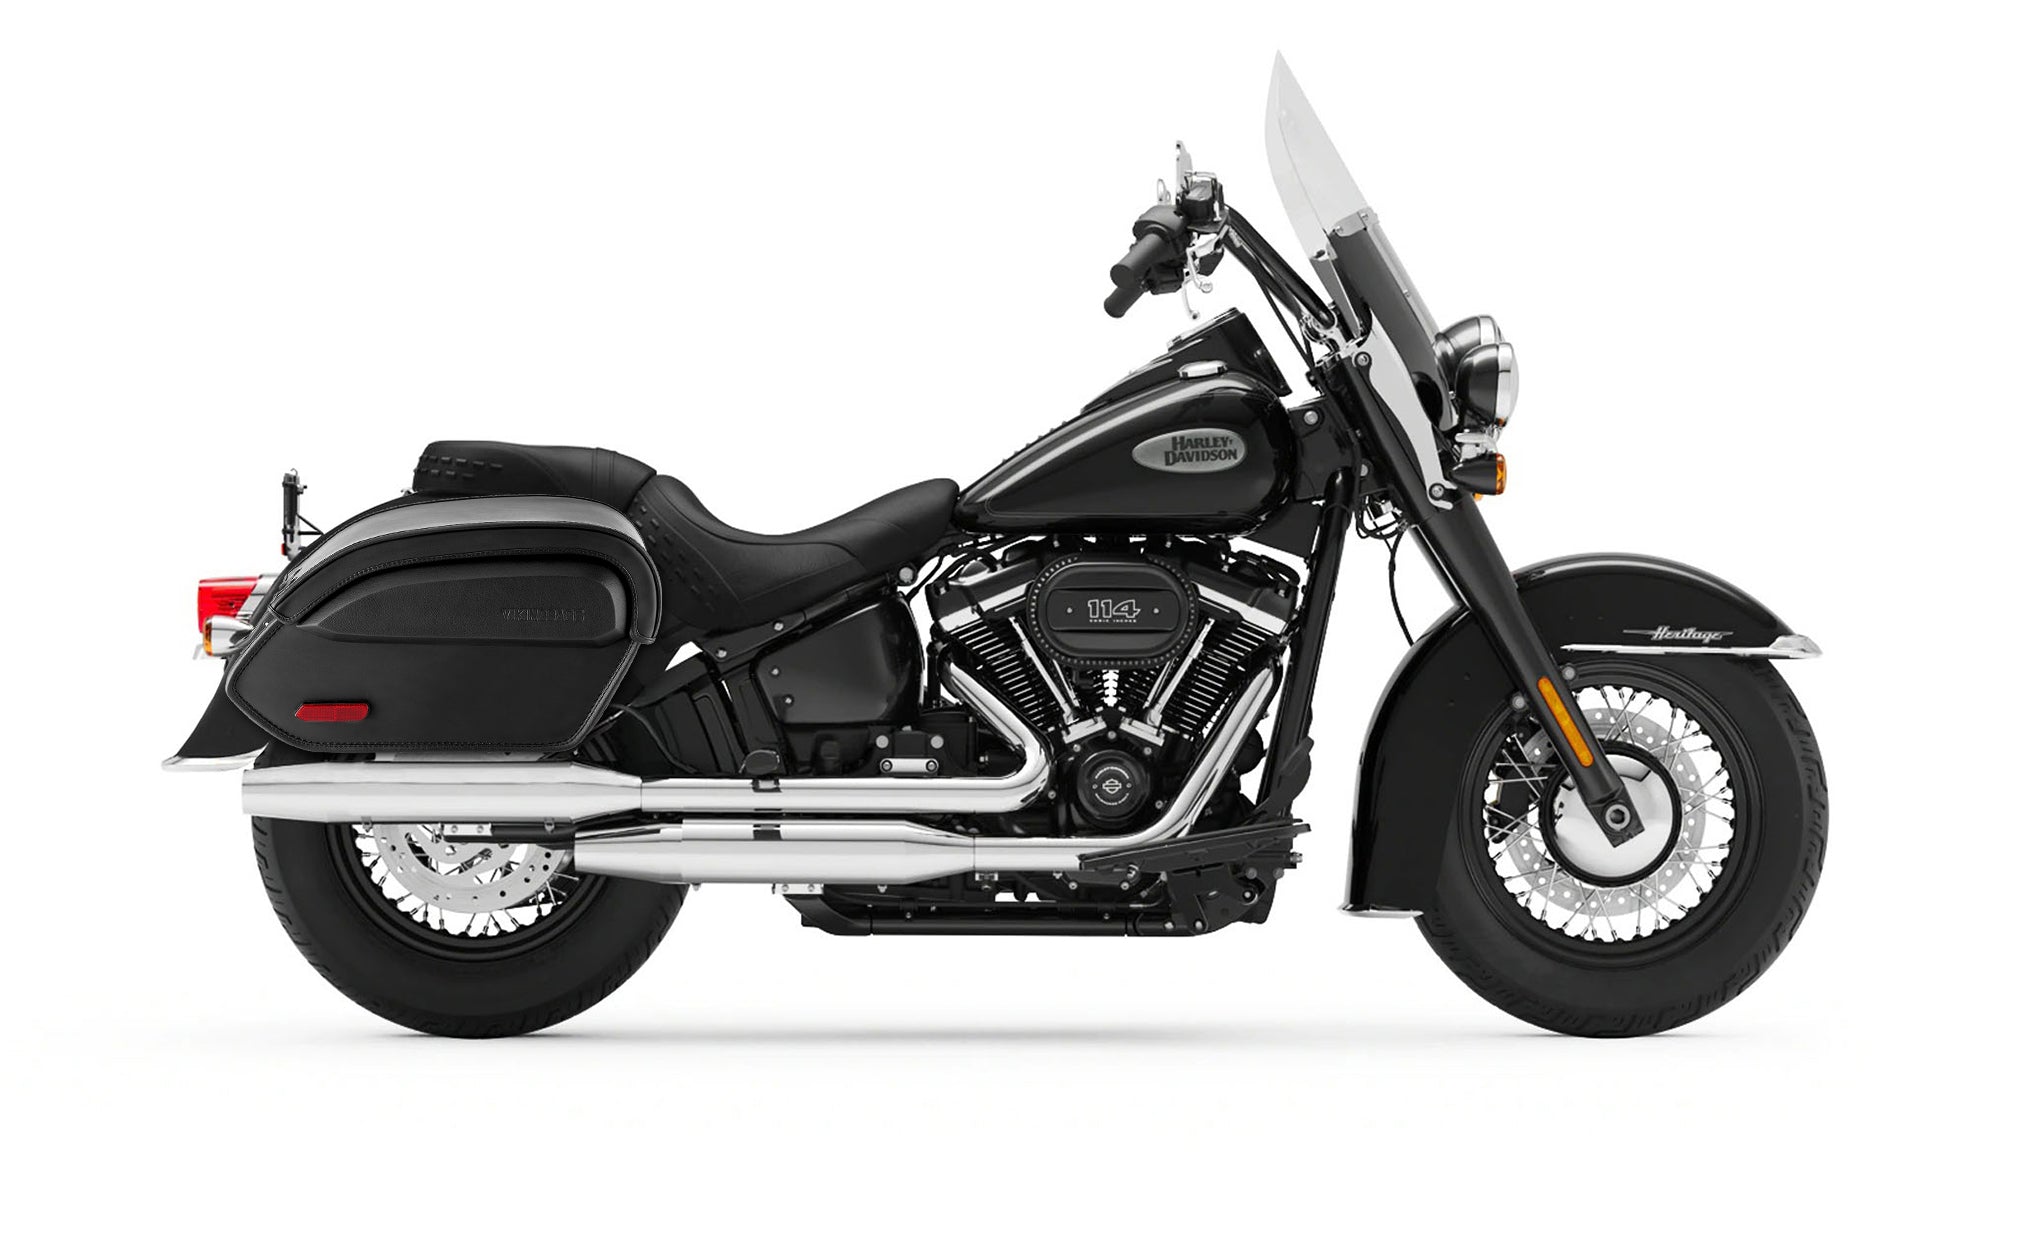 Viking Aviator Large Leather Motorcycle Saddlebags For Harley Softail Heritage Flst I C Ci on Bike Photo @expand